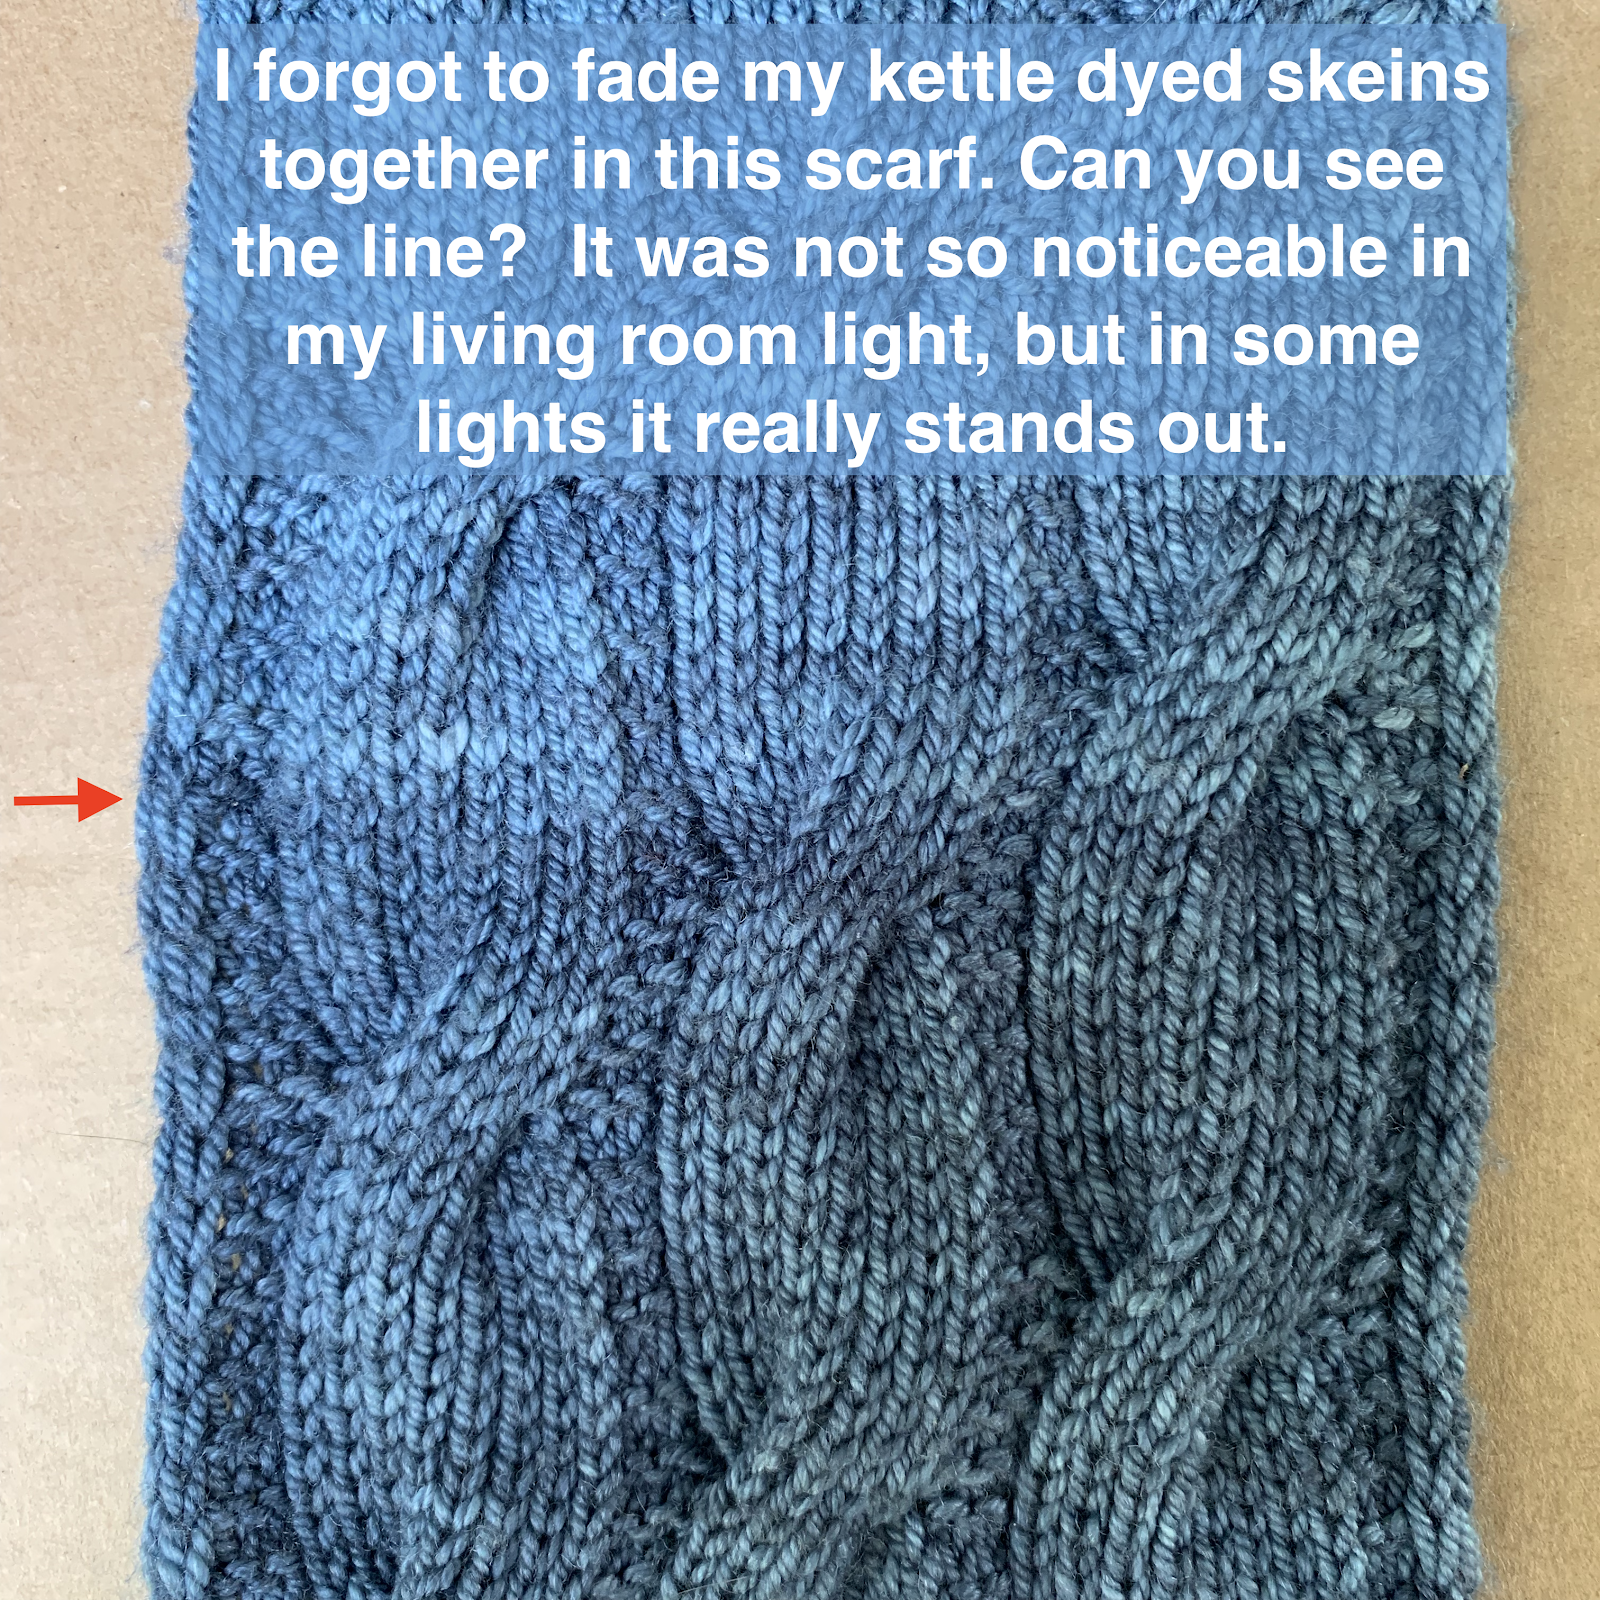 Kettle dyed yarn scarf